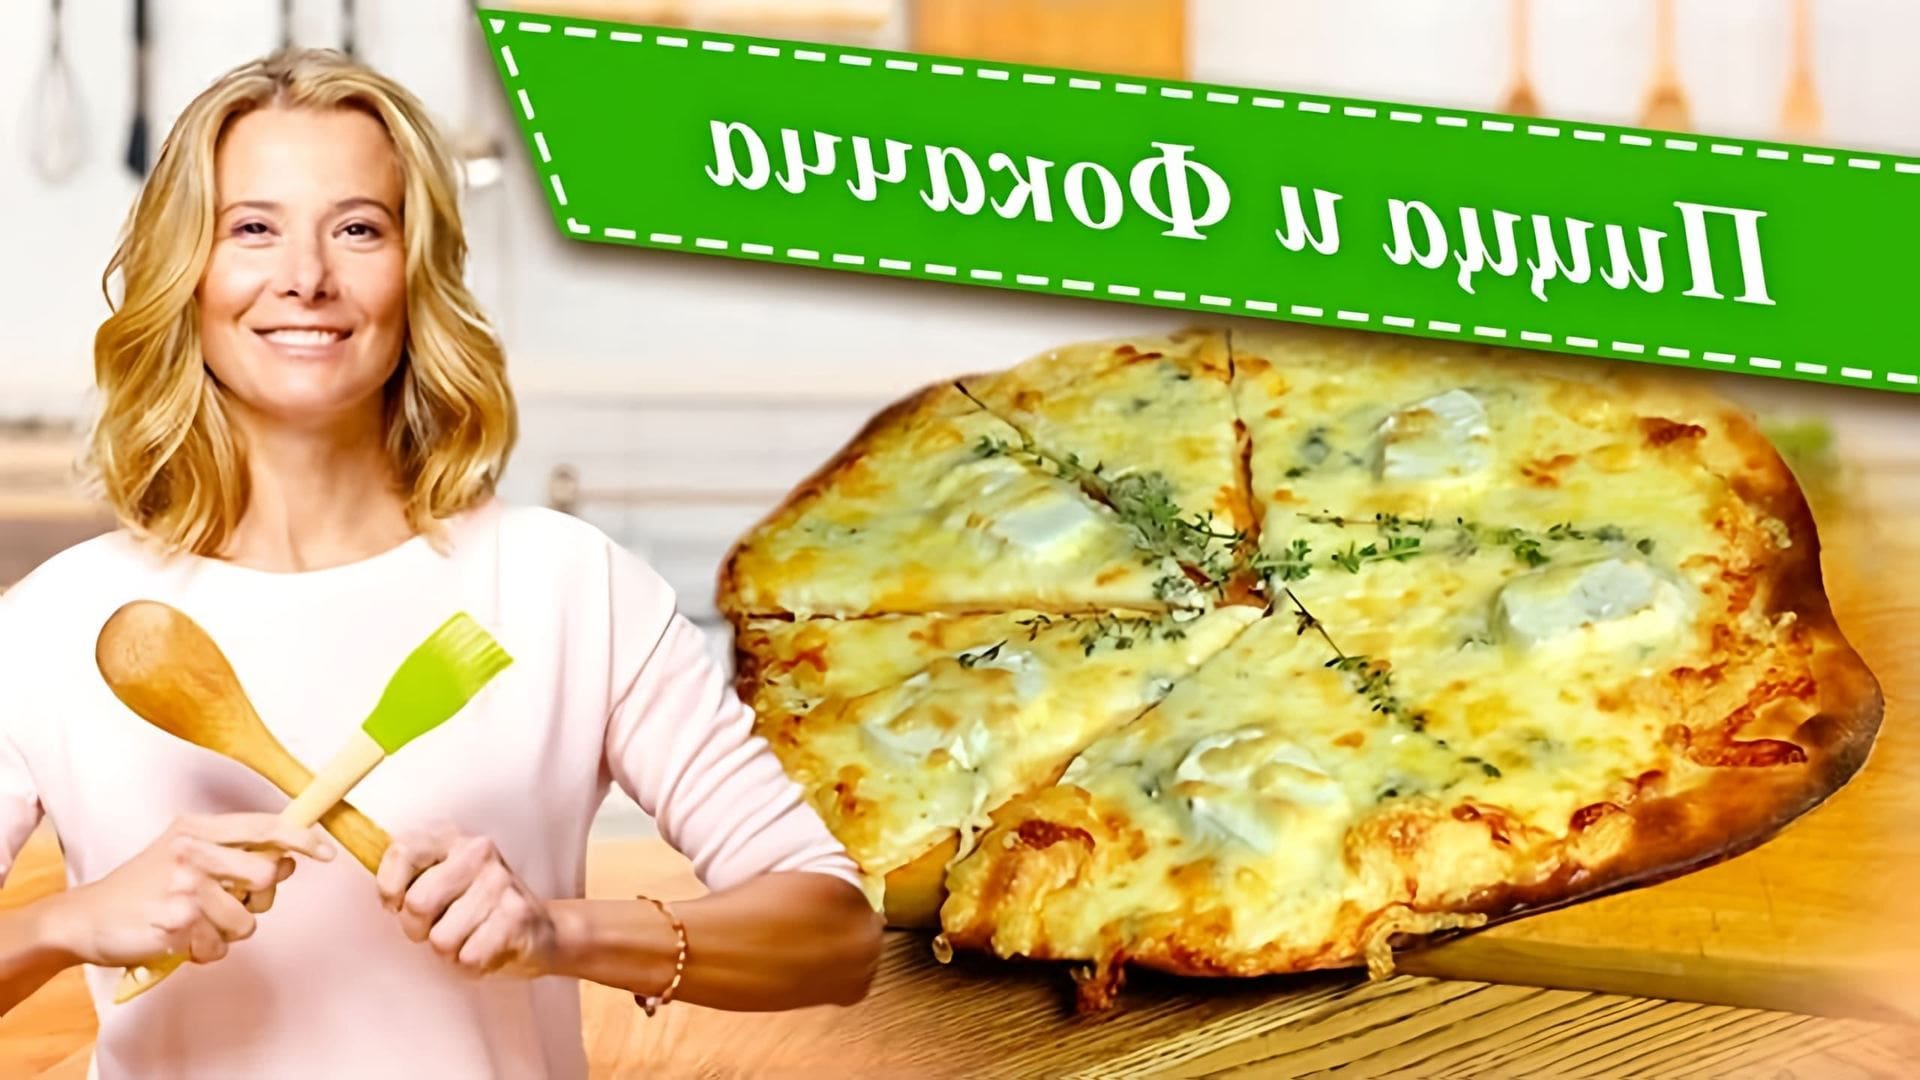 Сборник рецептов вкусной домашней пиццы и фокачча от Юлии Высоцкой: пицца «Четыре сыра», пицца с овощами... 